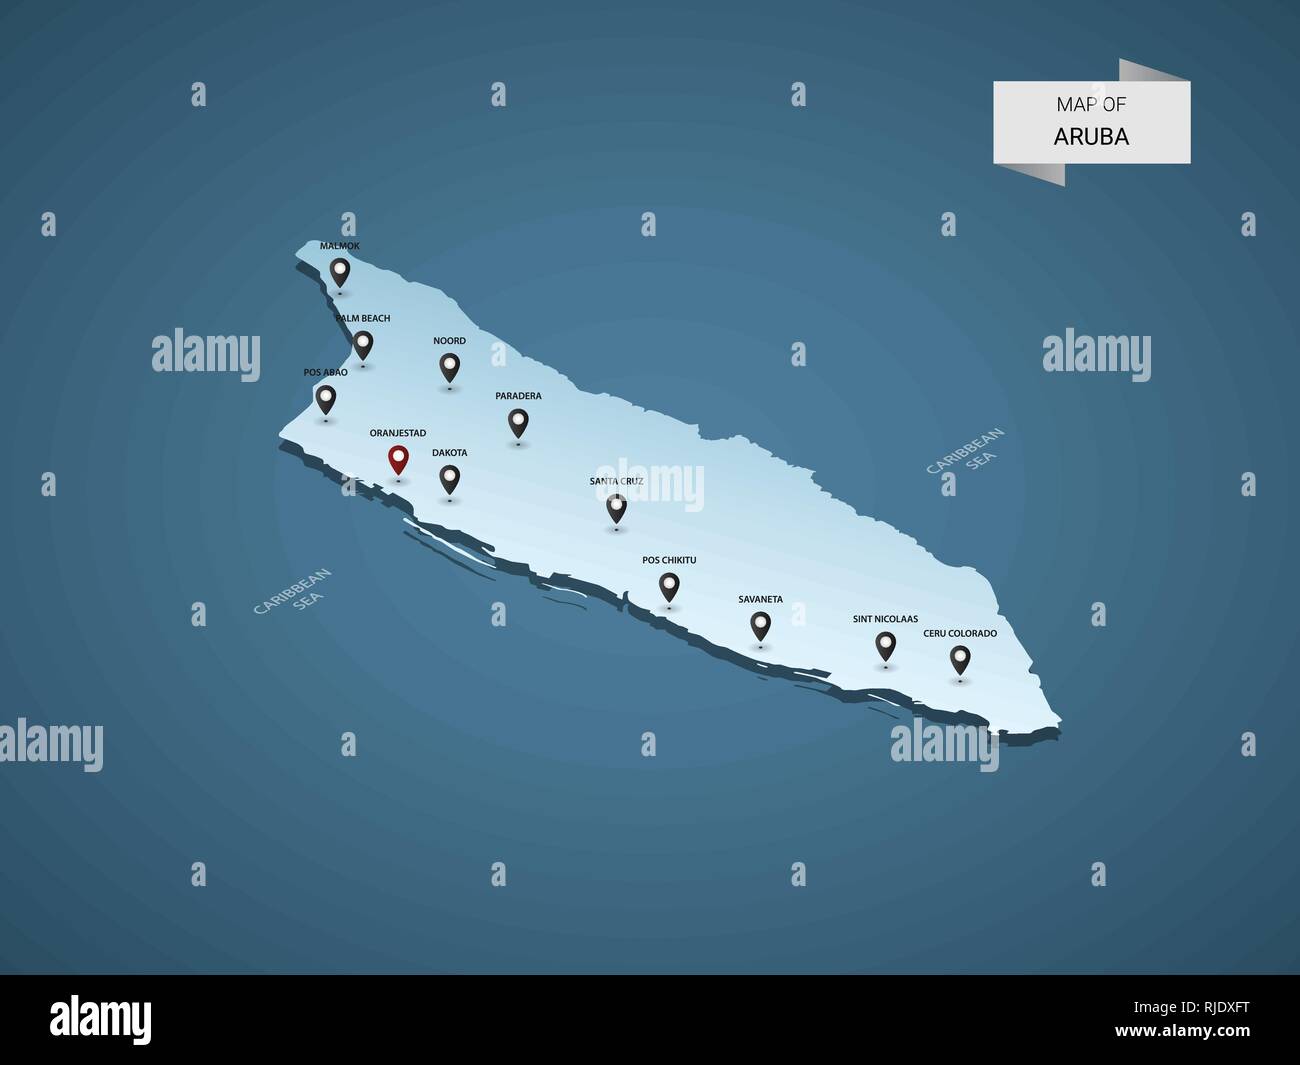 3D isométrique carte Aruba, vector illustration avec les villes, les frontières, les capitaux, les divisions administratives et marques ; pointeur fond bleu dégradé. Con Illustration de Vecteur